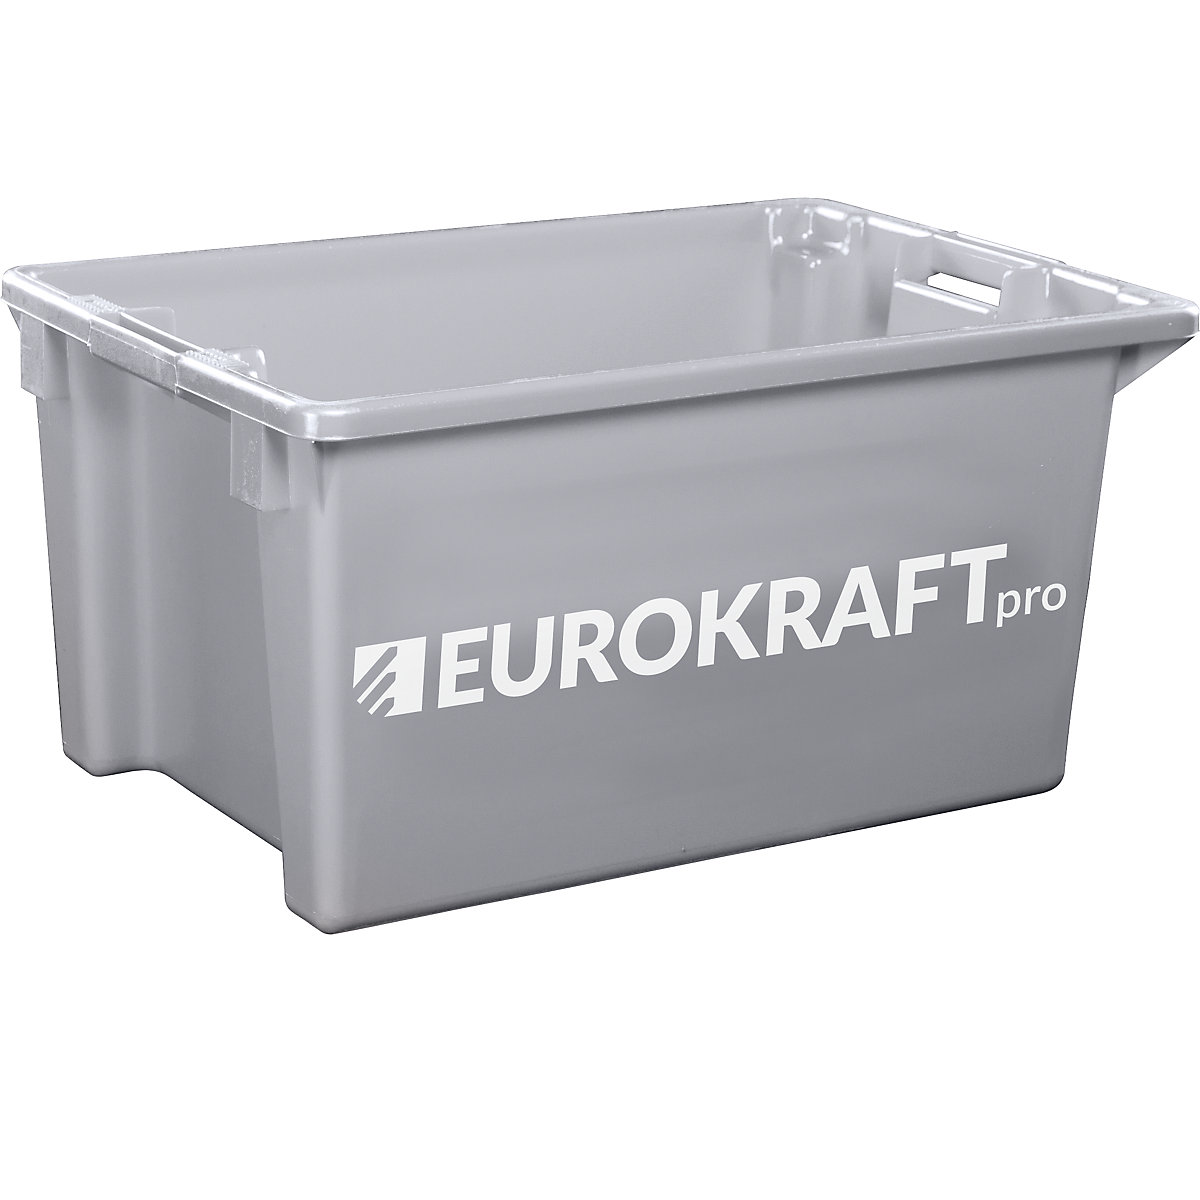 EUROKRAFTpro – Otočná stohovací nádoba z polypropylenu vhodného pro potraviny, obsah 70 litrů, bal.j. 2 ks, stěny a dno plné, šedá